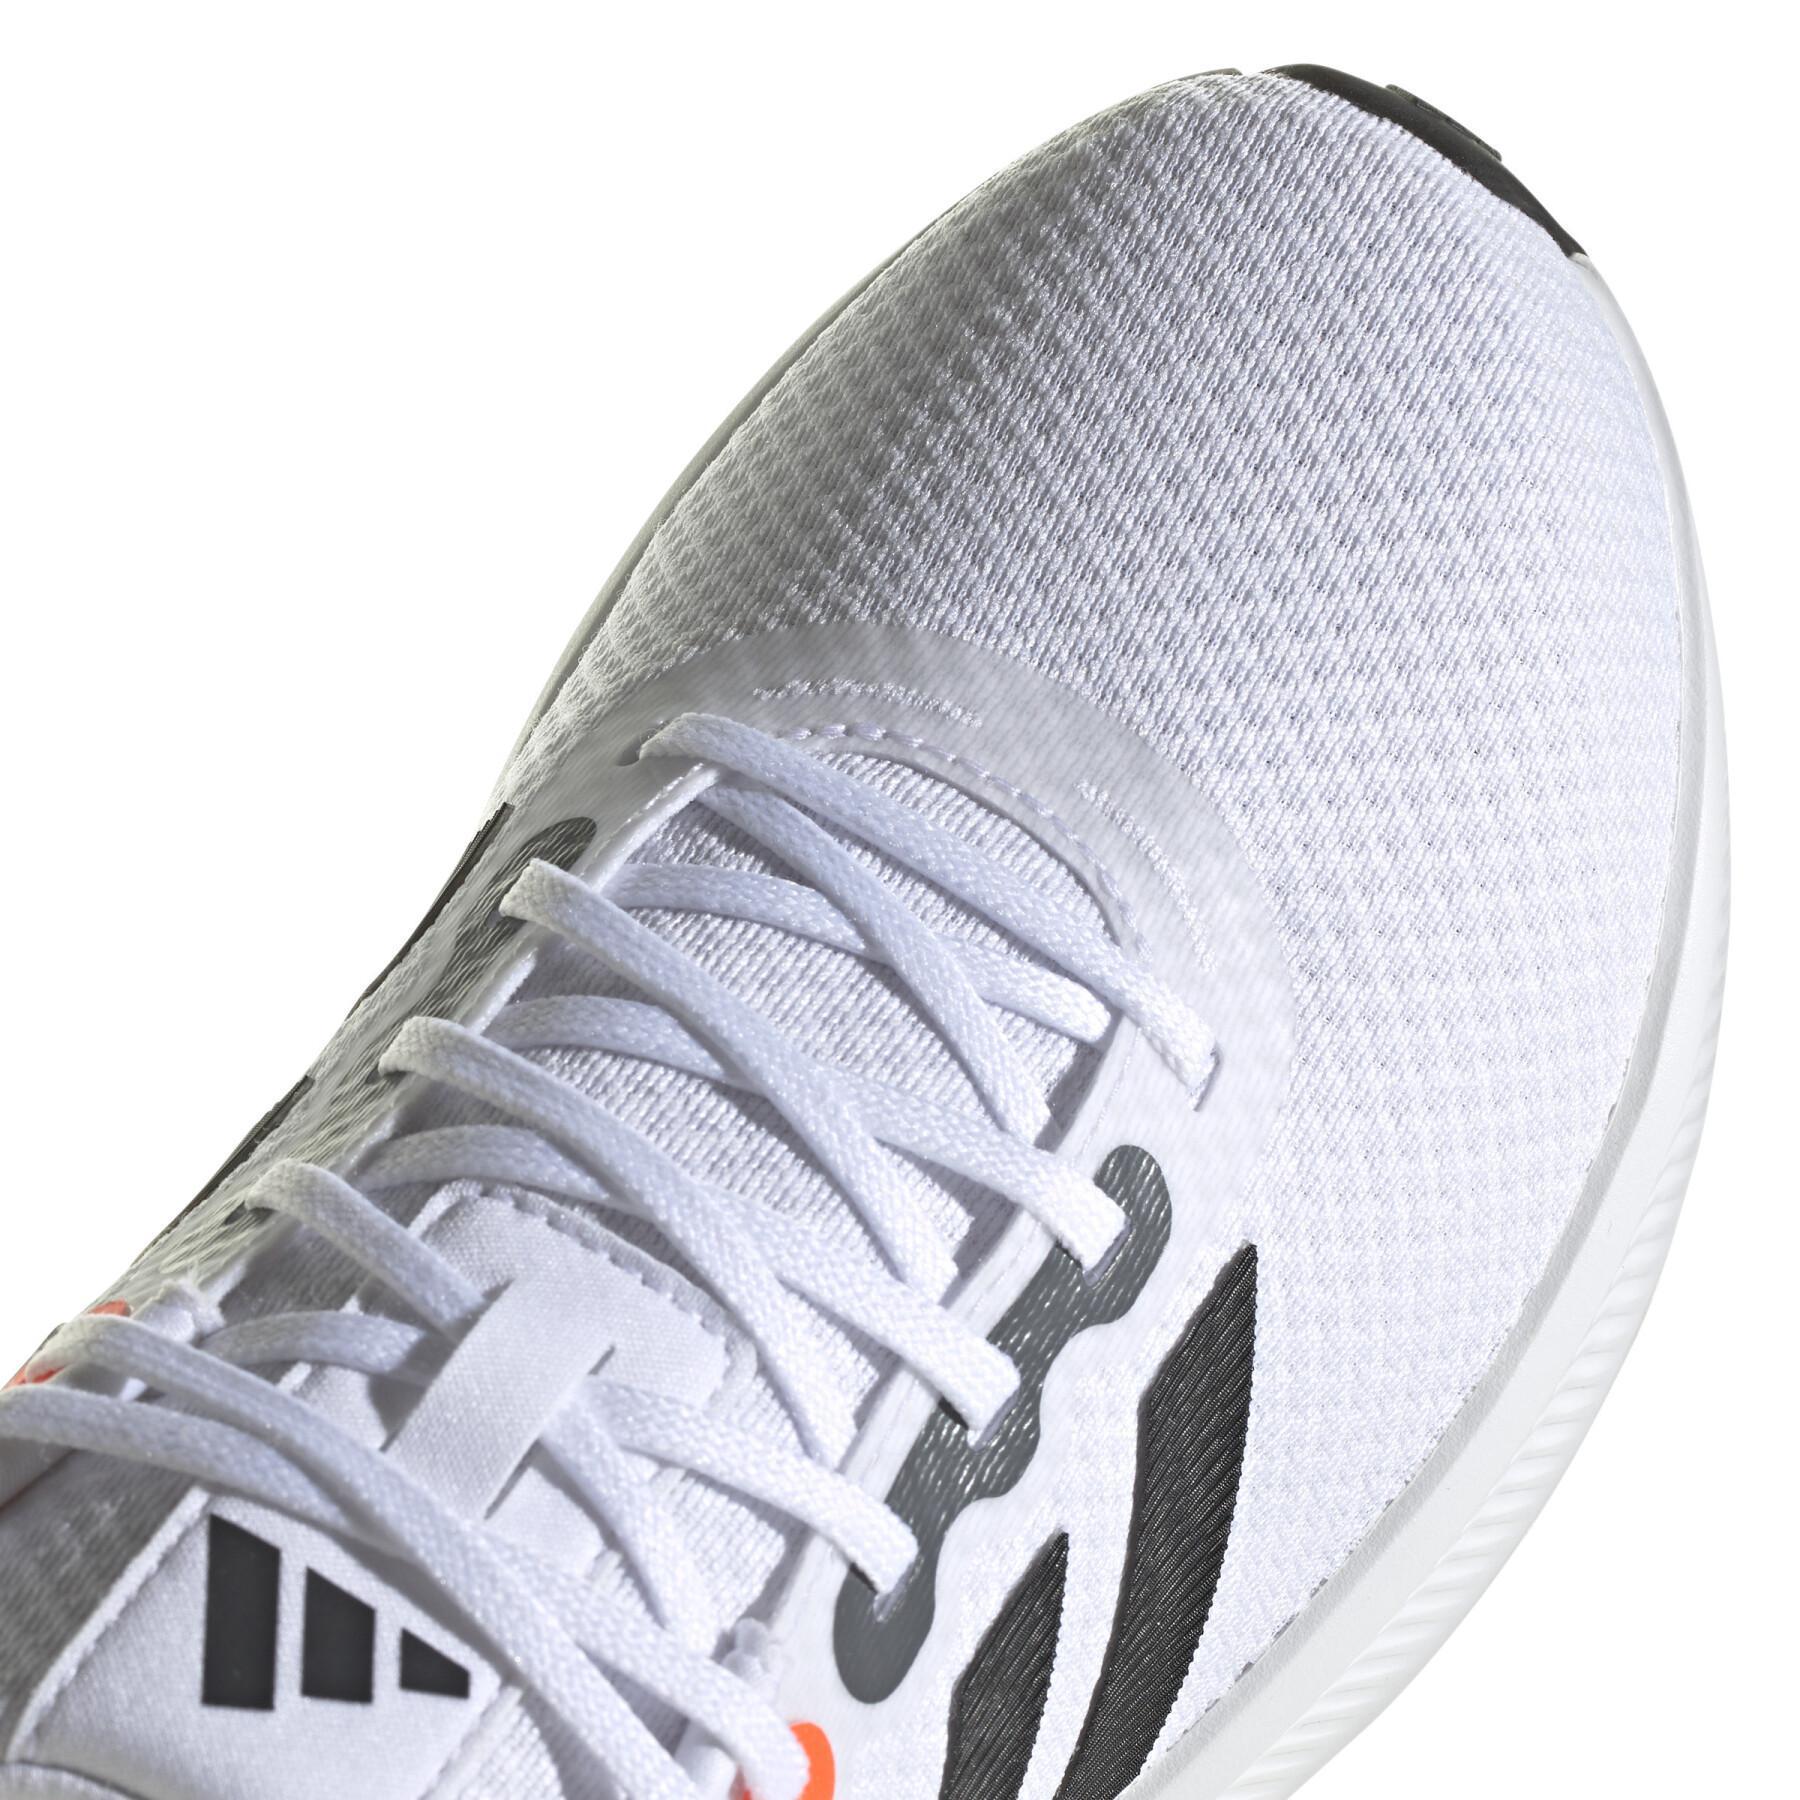 Chaussures de running adidas Runfalcon 3